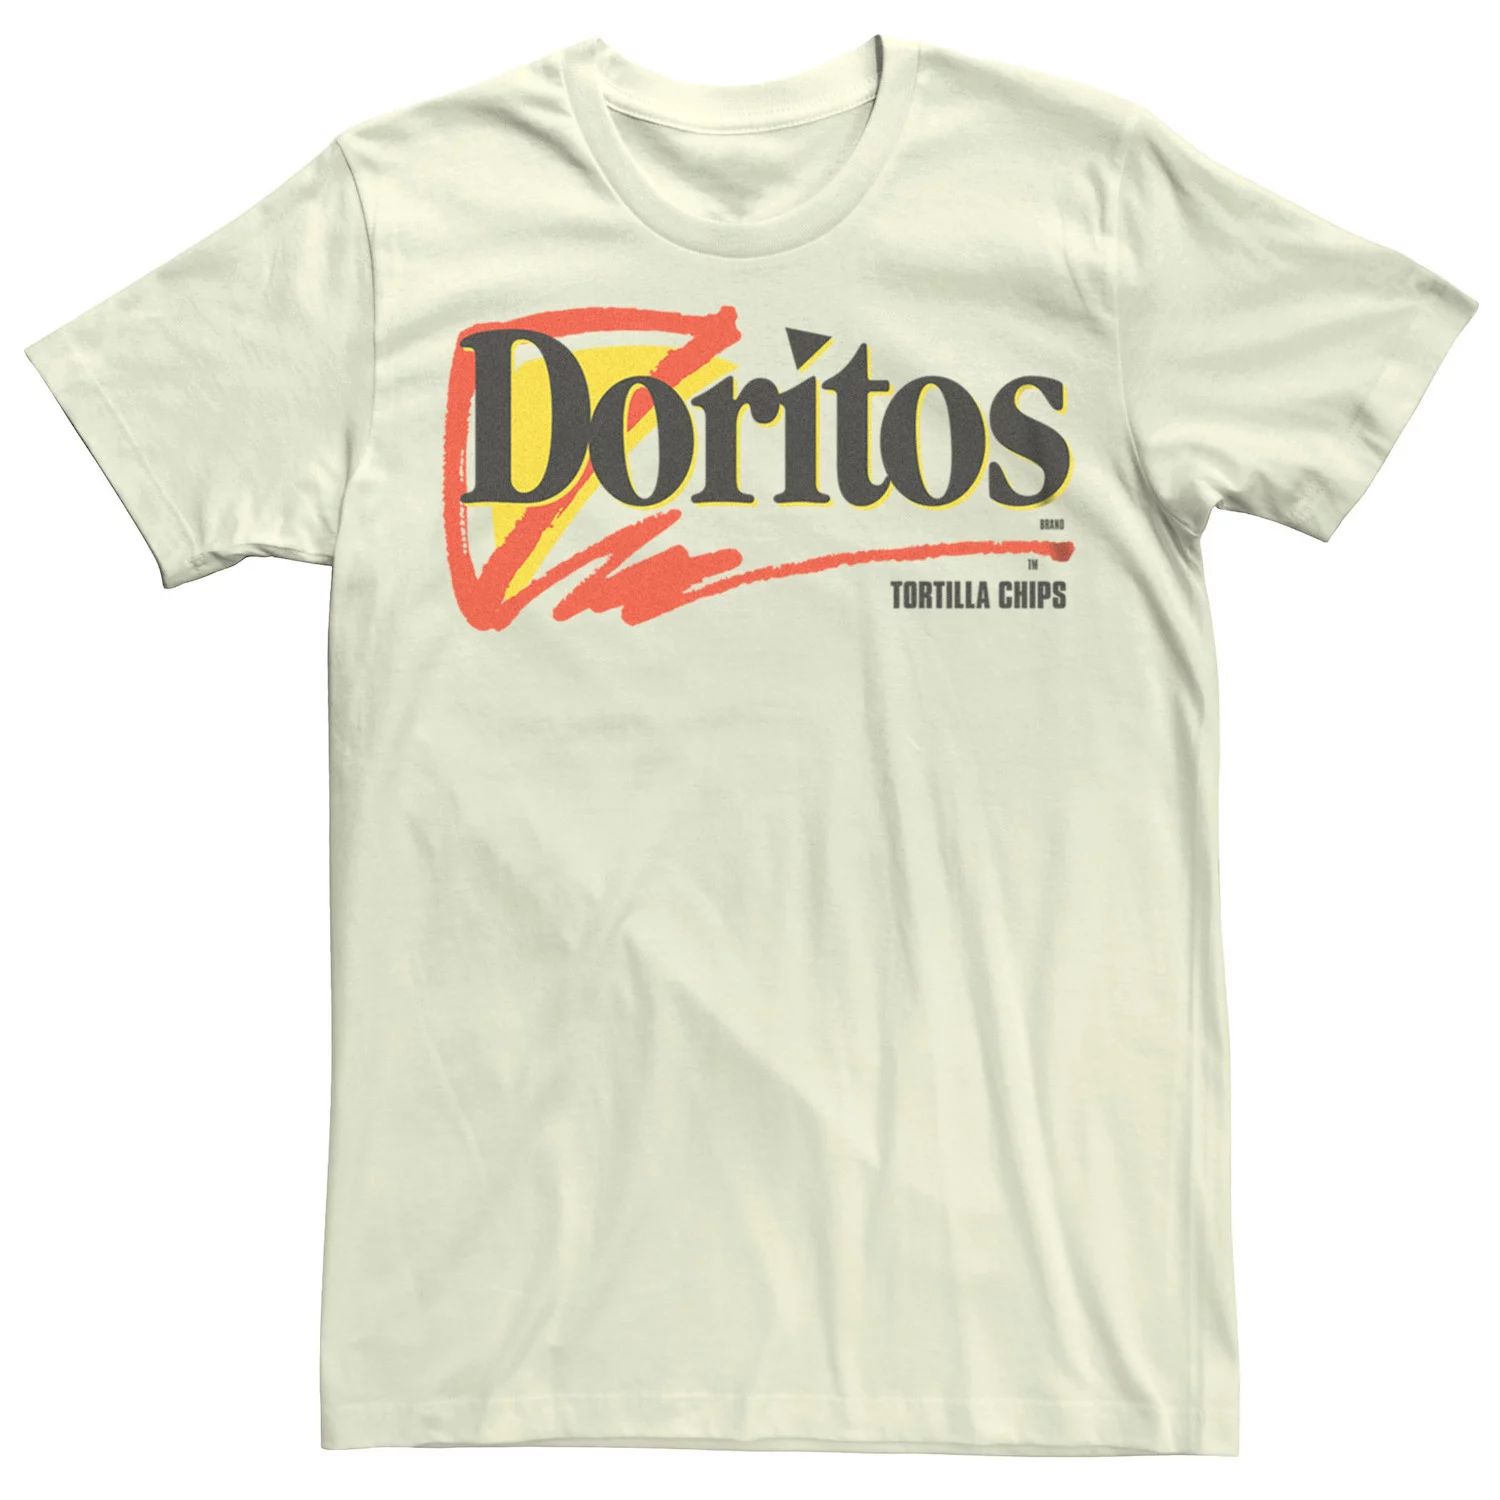 Мужская футболка с логотипом Doritos Tortilla Chips Licensed Character мужская футболка с логотипом doritos tortilla chips licensed character